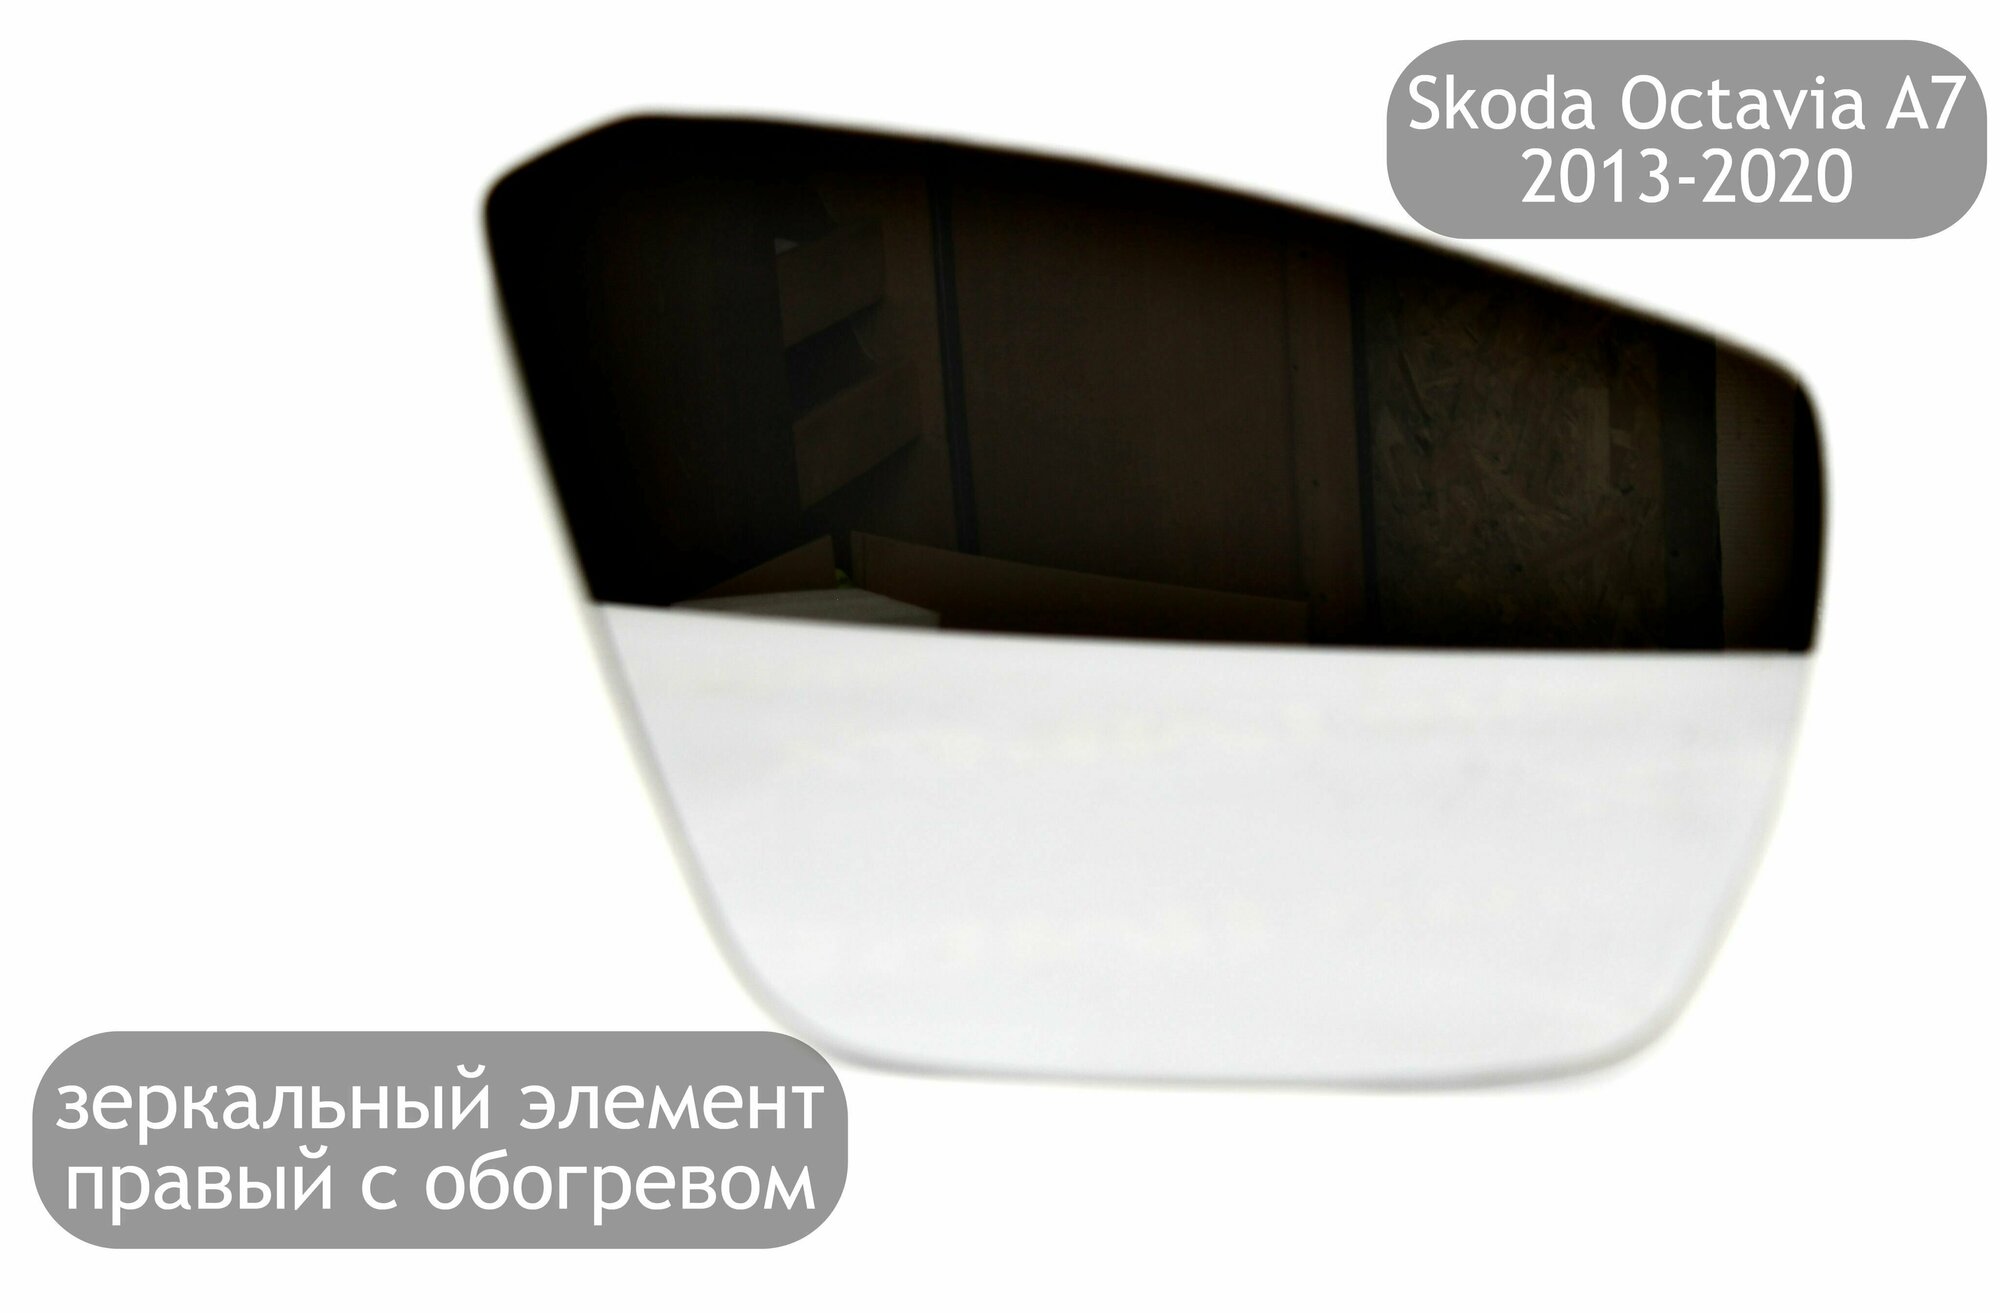 Зеркальный элемент правый с обогревом для Skoda Octavia A7 2013-2020 (дорестайлинг и рестайлинг)